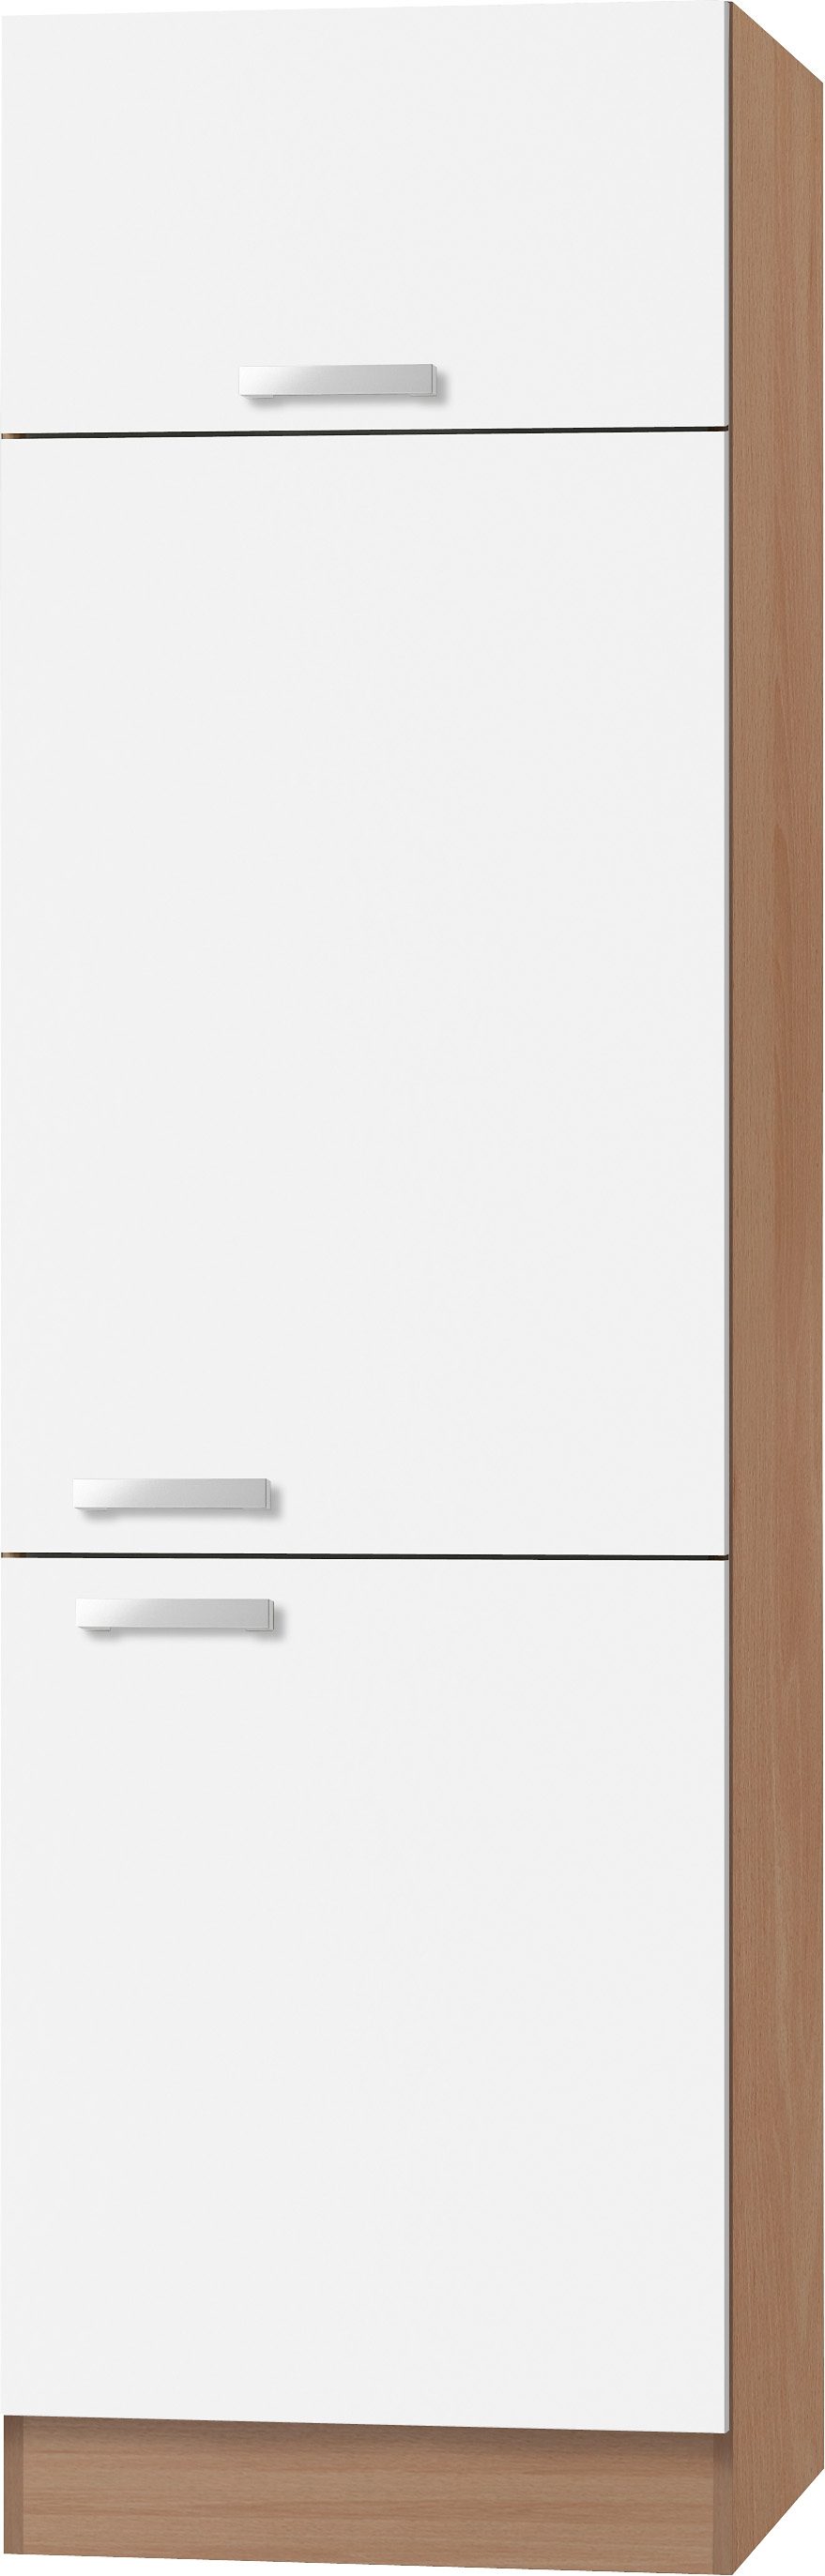 optifit koelkastombouw odense 60 cm breed, 207 cm hoog, geschikt voor inbouwkoelkast met maat 88 cm wit